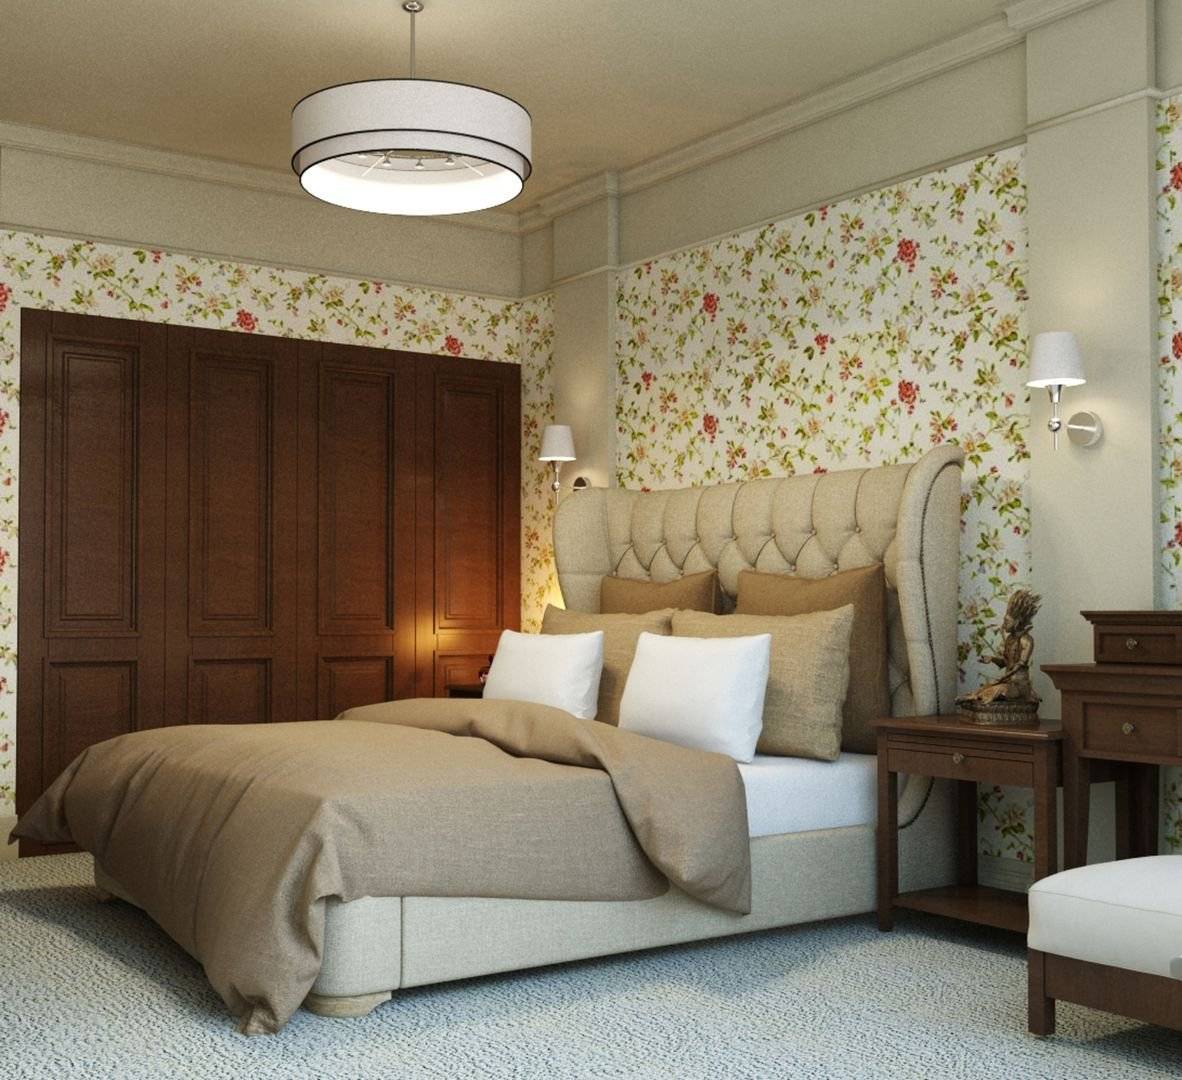 Классика по-английски: 83 роскошных фото-идеи дизайна спальни в английском стиле